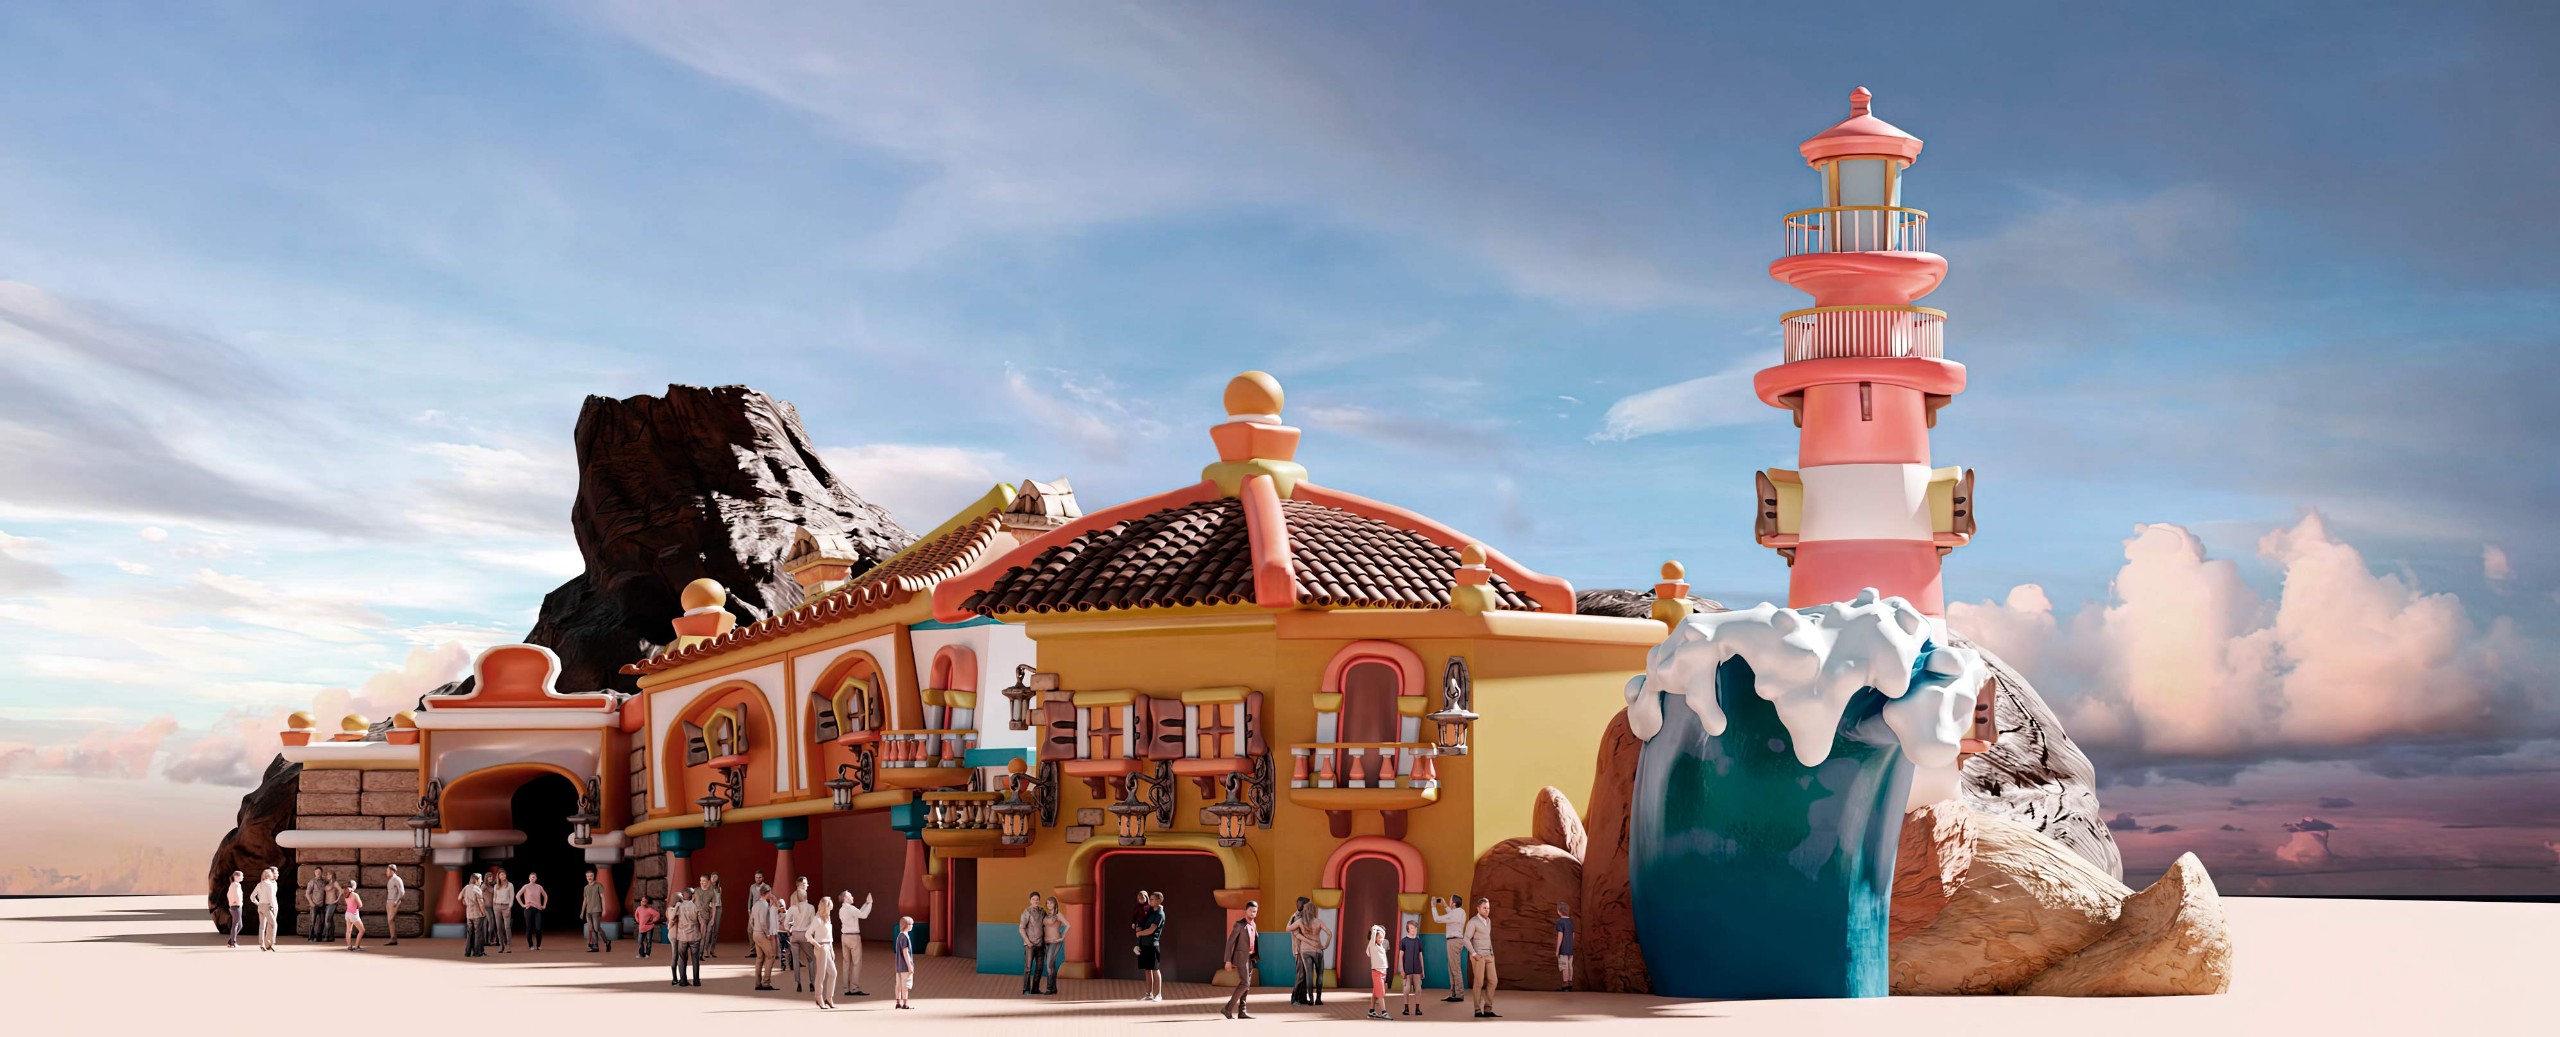 amusement park design concepts, theme kids town